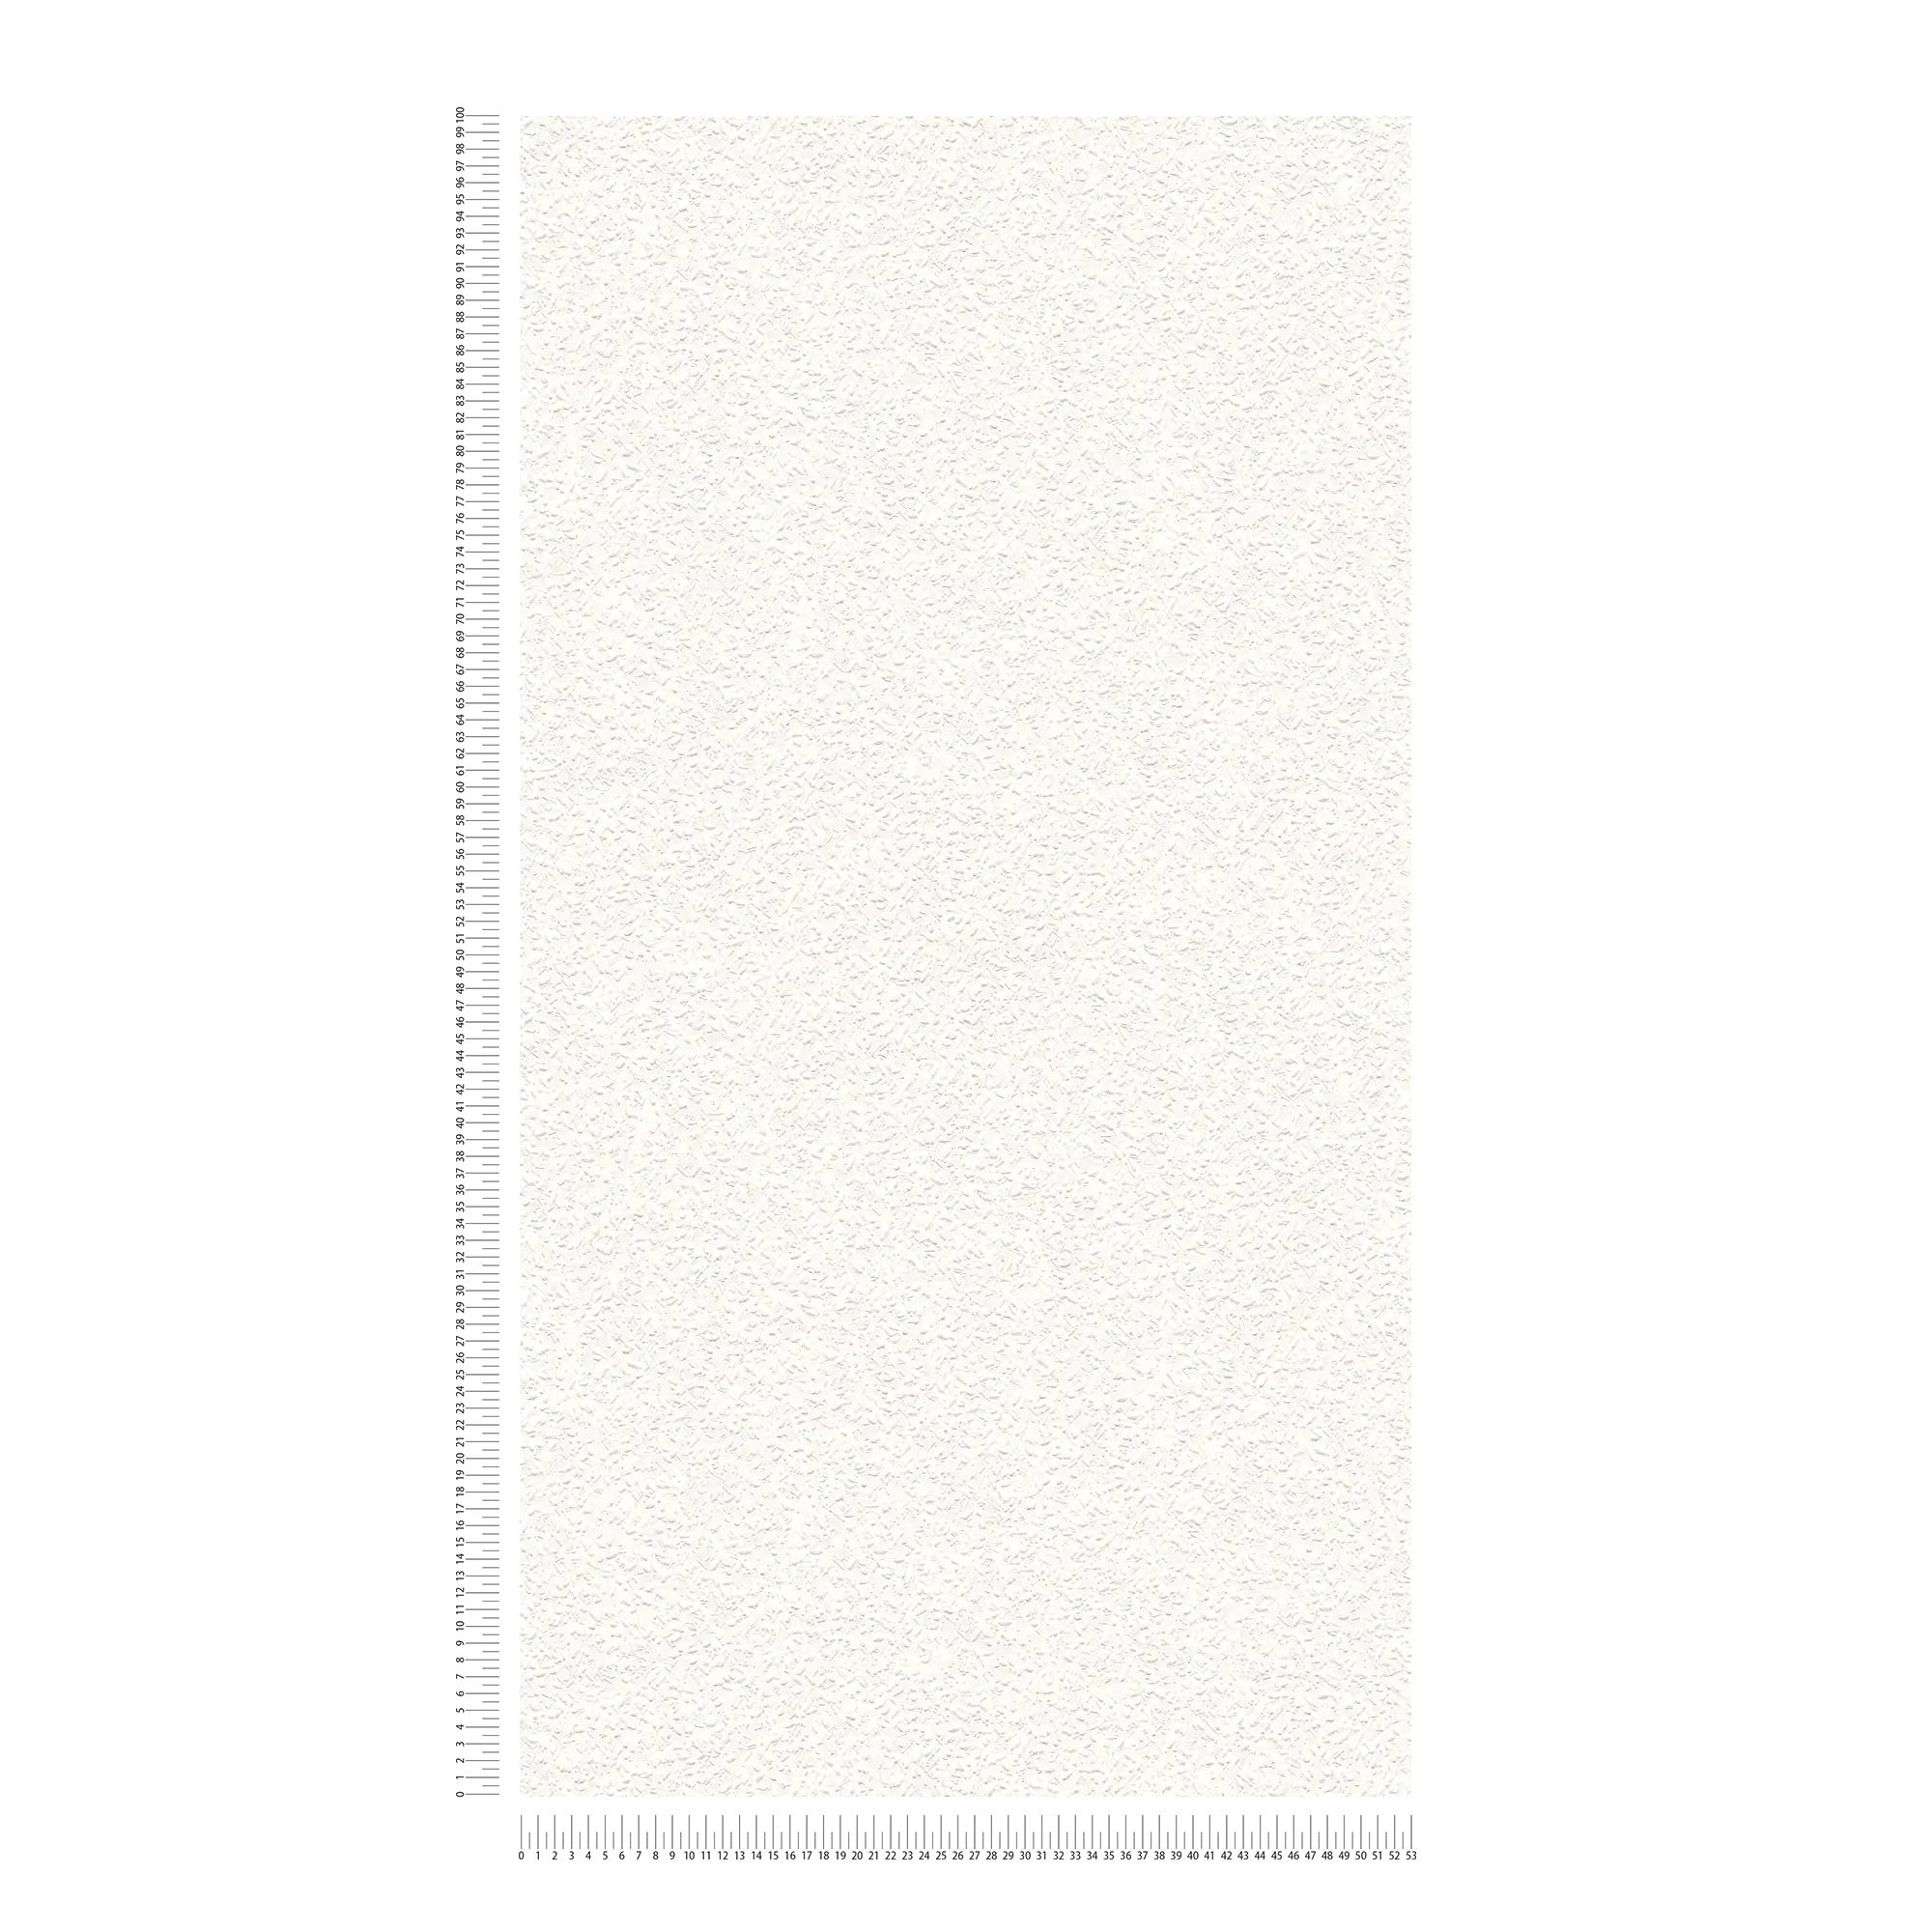             papier peint aspect ingrain blanc avec motifs structurés
        